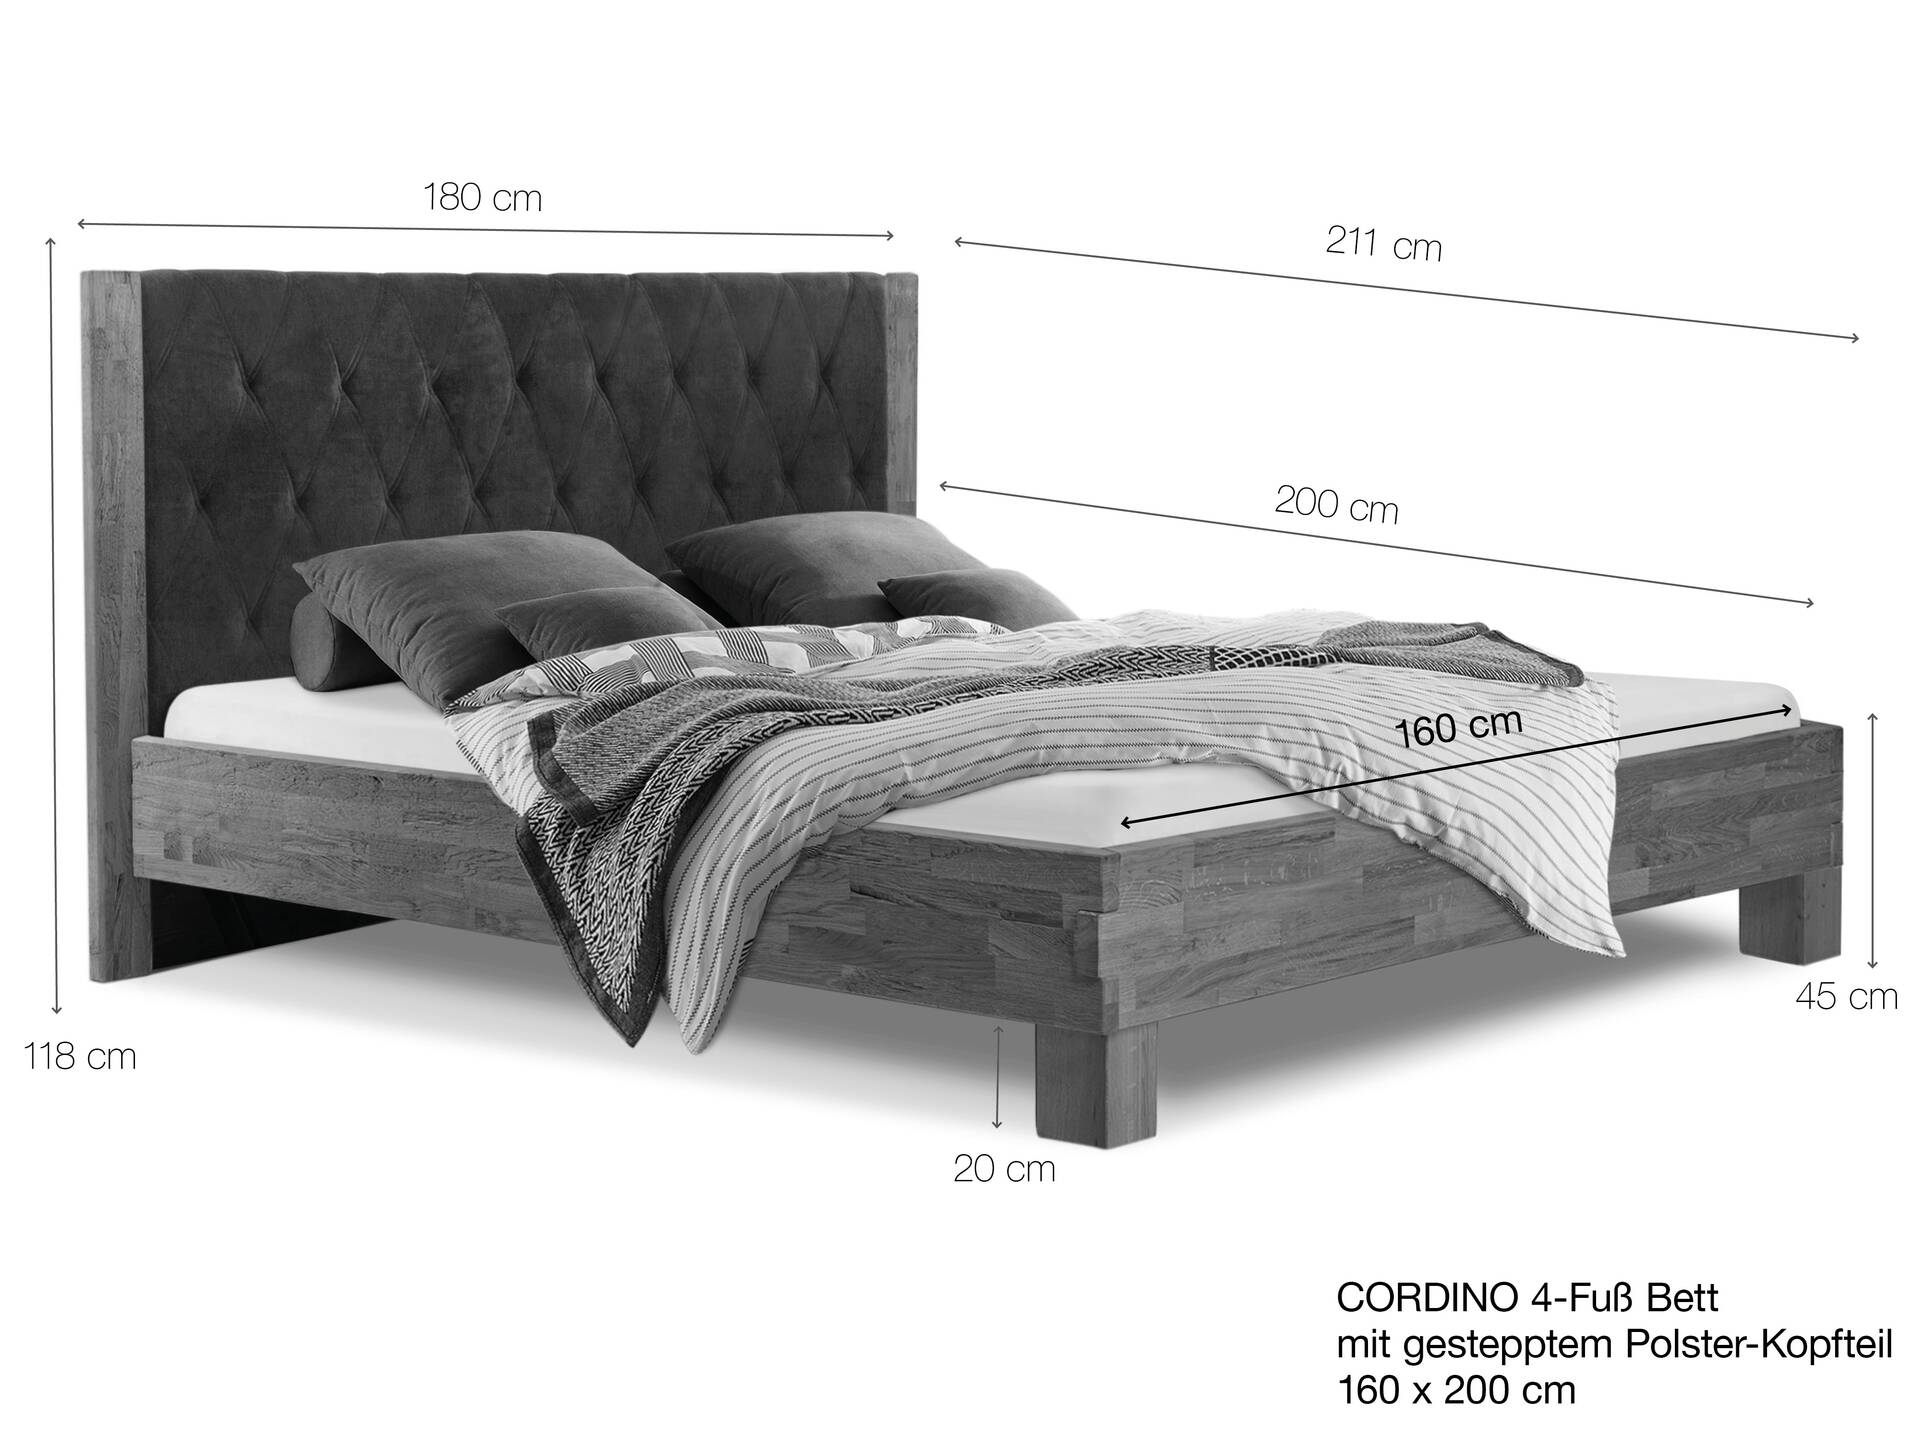 CORDINO 4-Fuß-Bett aus Eiche mit gestepptem Polster-Kopfteil, Material Massivholz 160 x 200 cm | Eiche lackiert | Kunstleder Schwarz | gebürstet